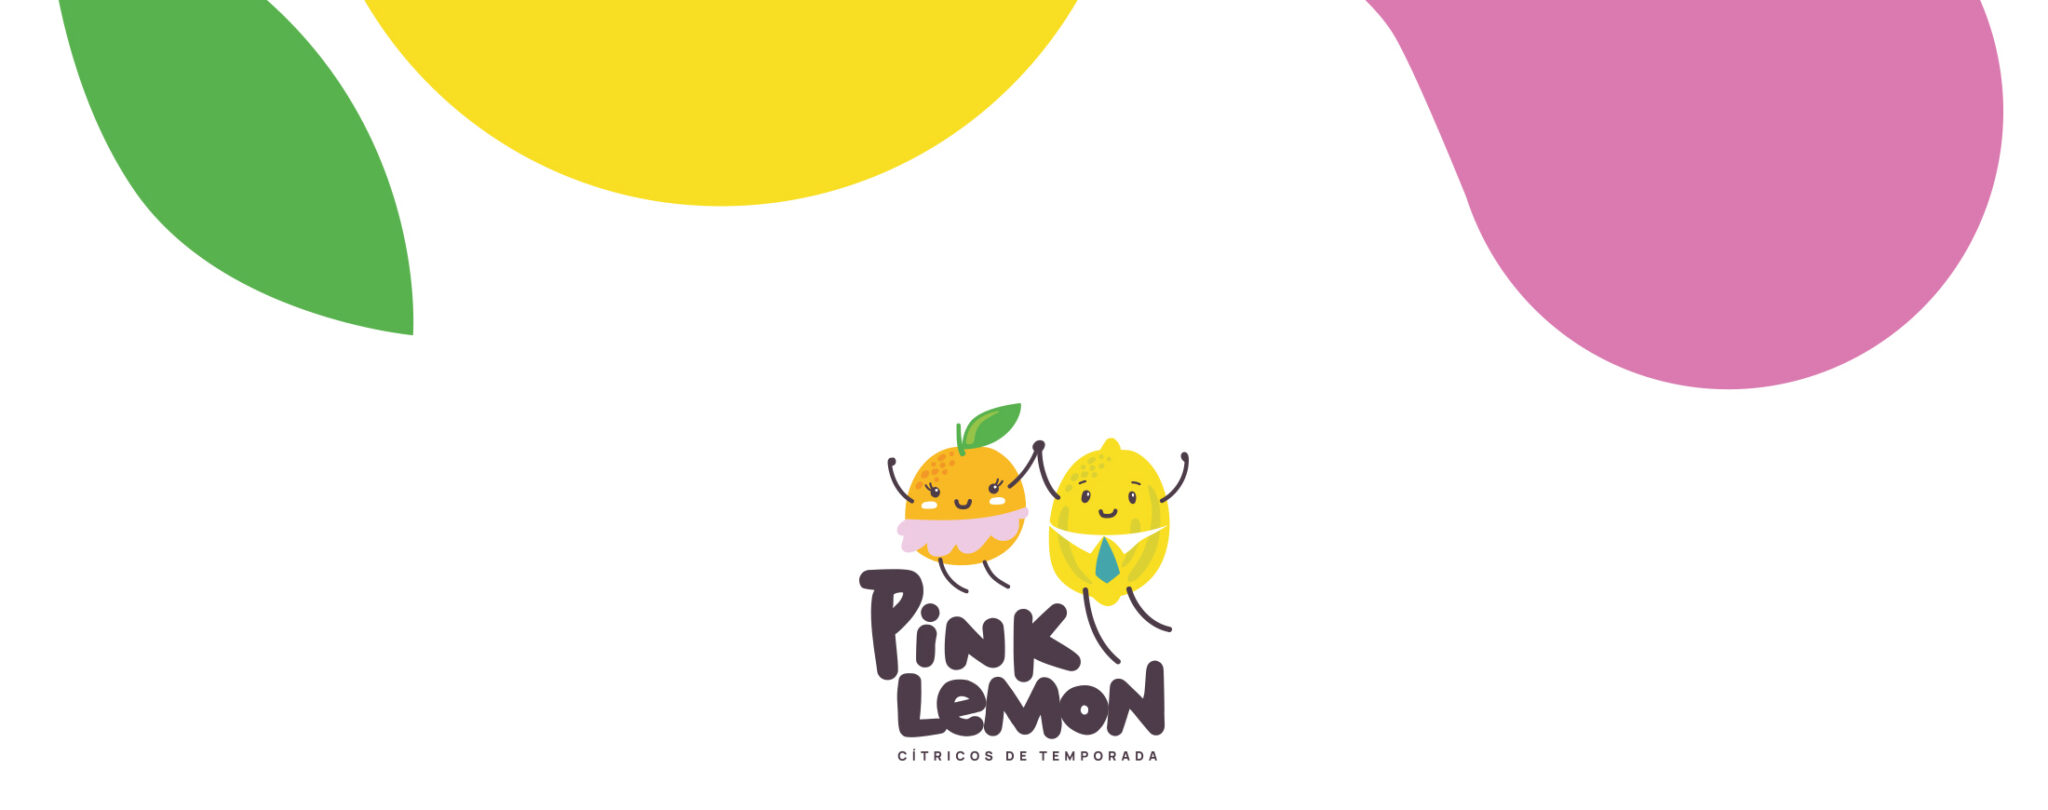 Pink Lemon 1 - Fama Publicidad